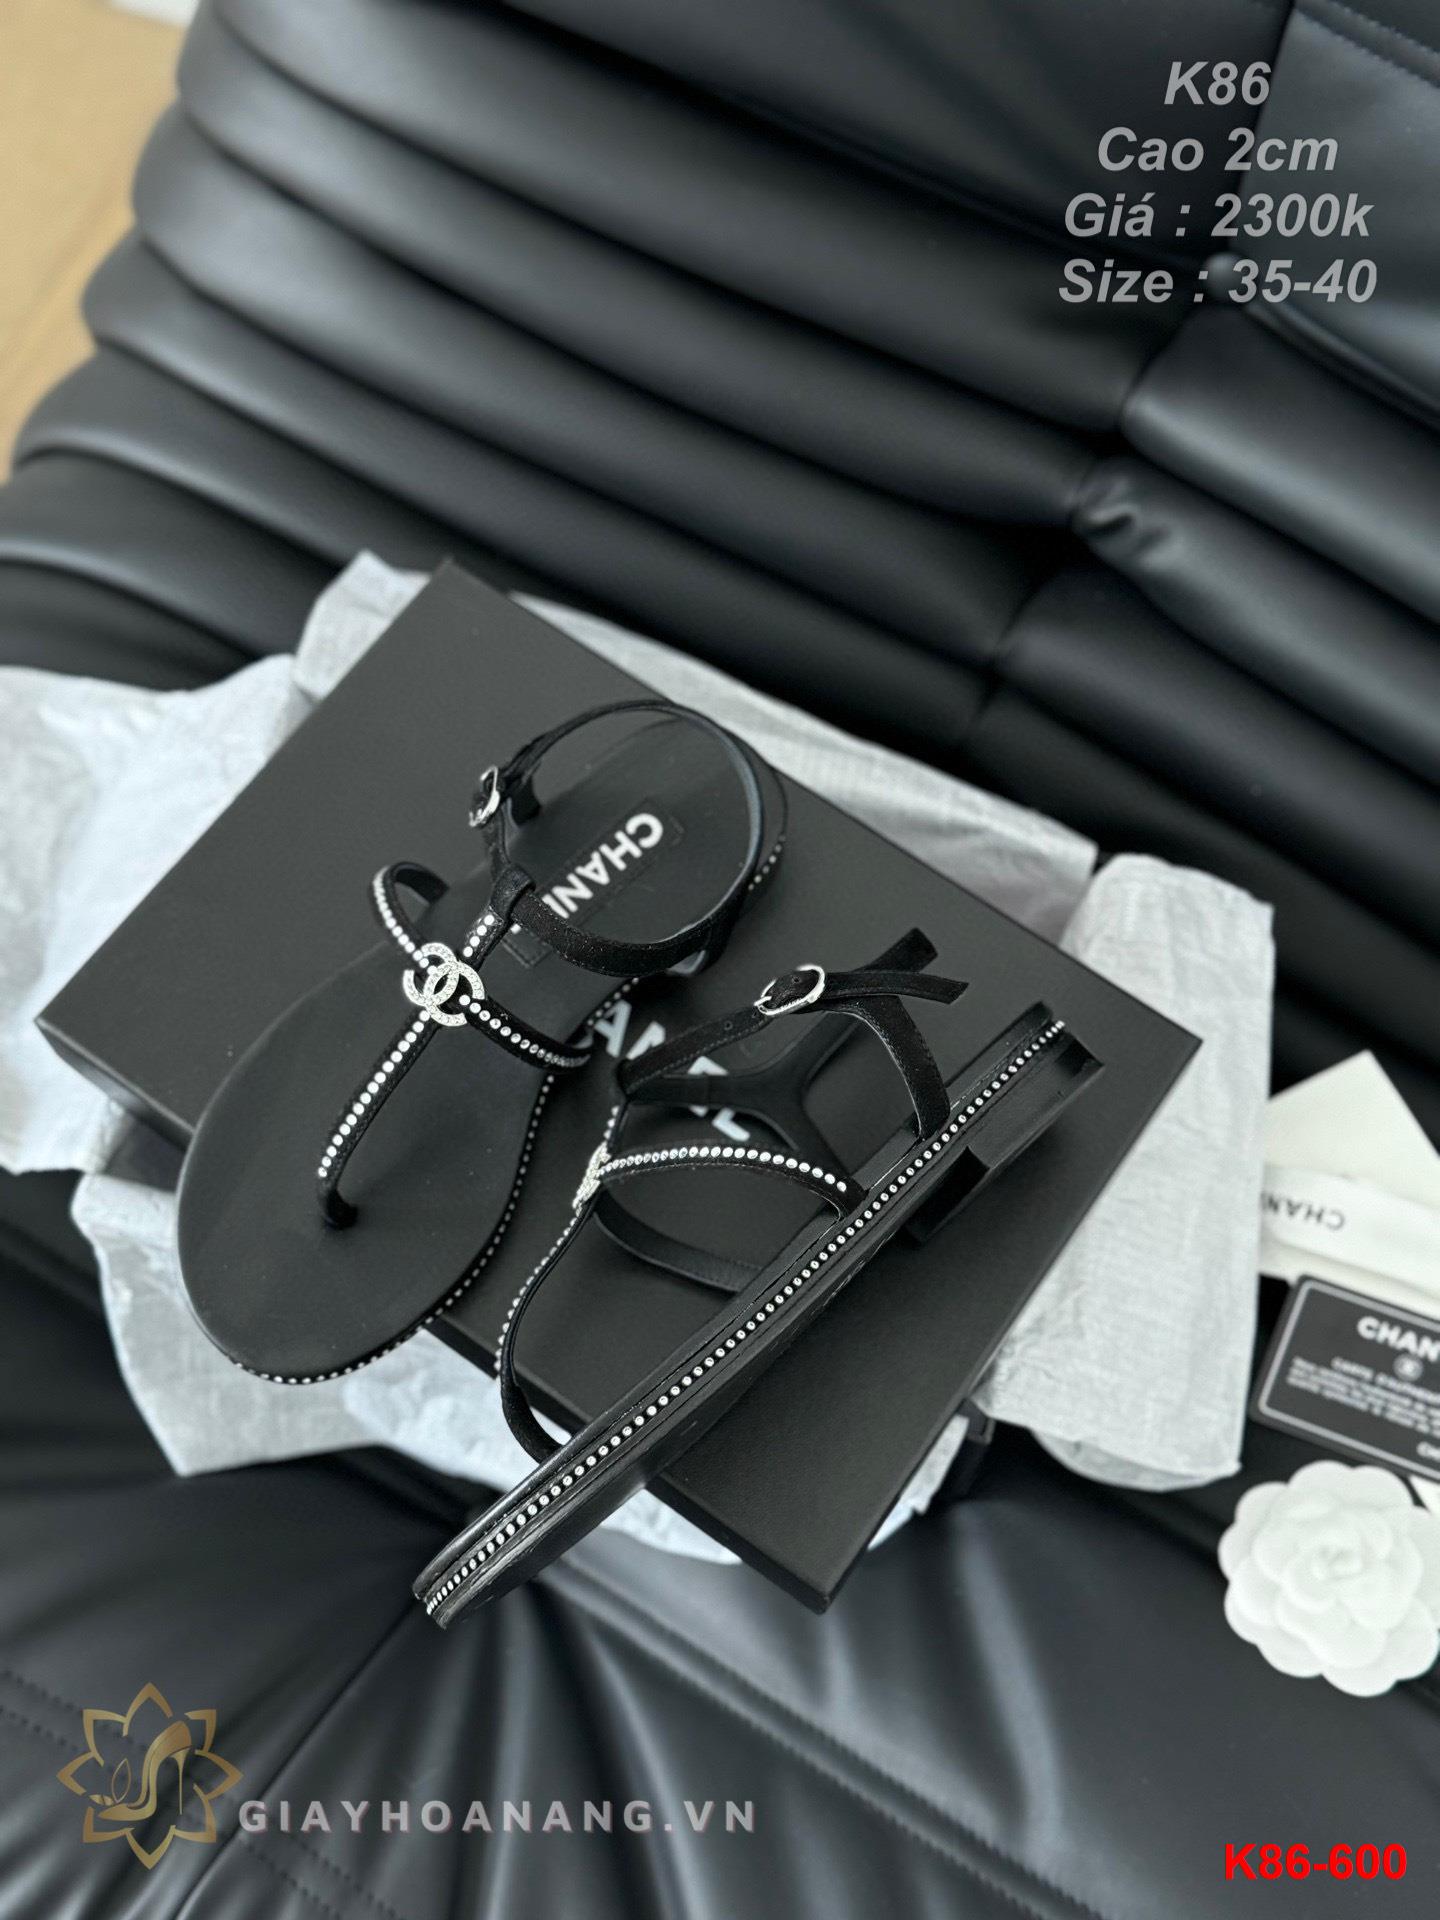 K86-600 Chanel sandal cao gót 2cm siêu cấp